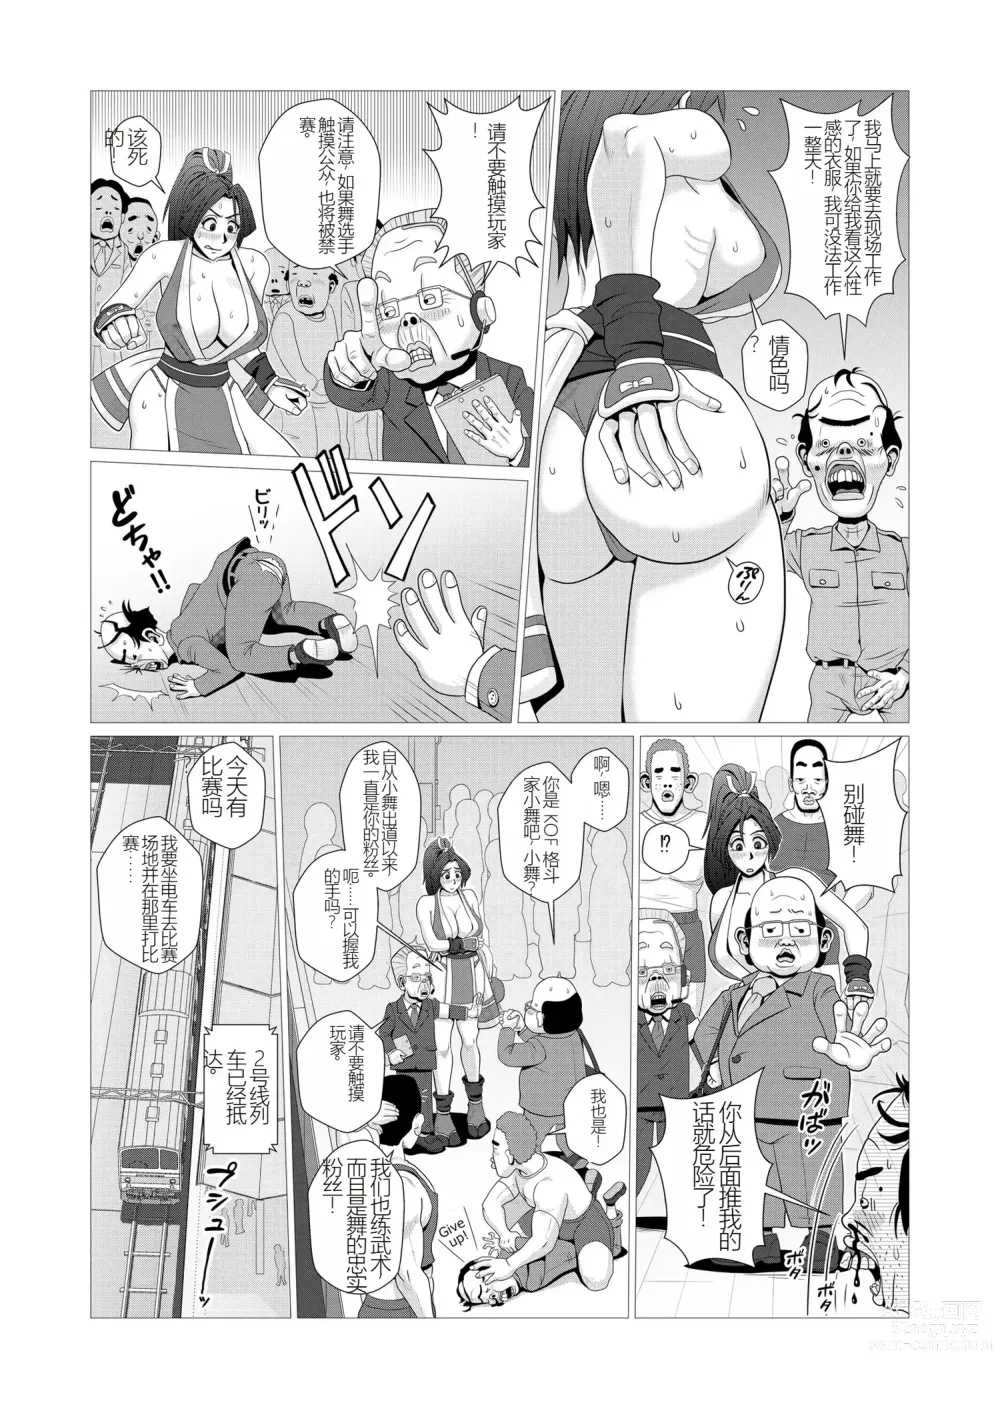 Page 6 of doujinshi Maidono no San